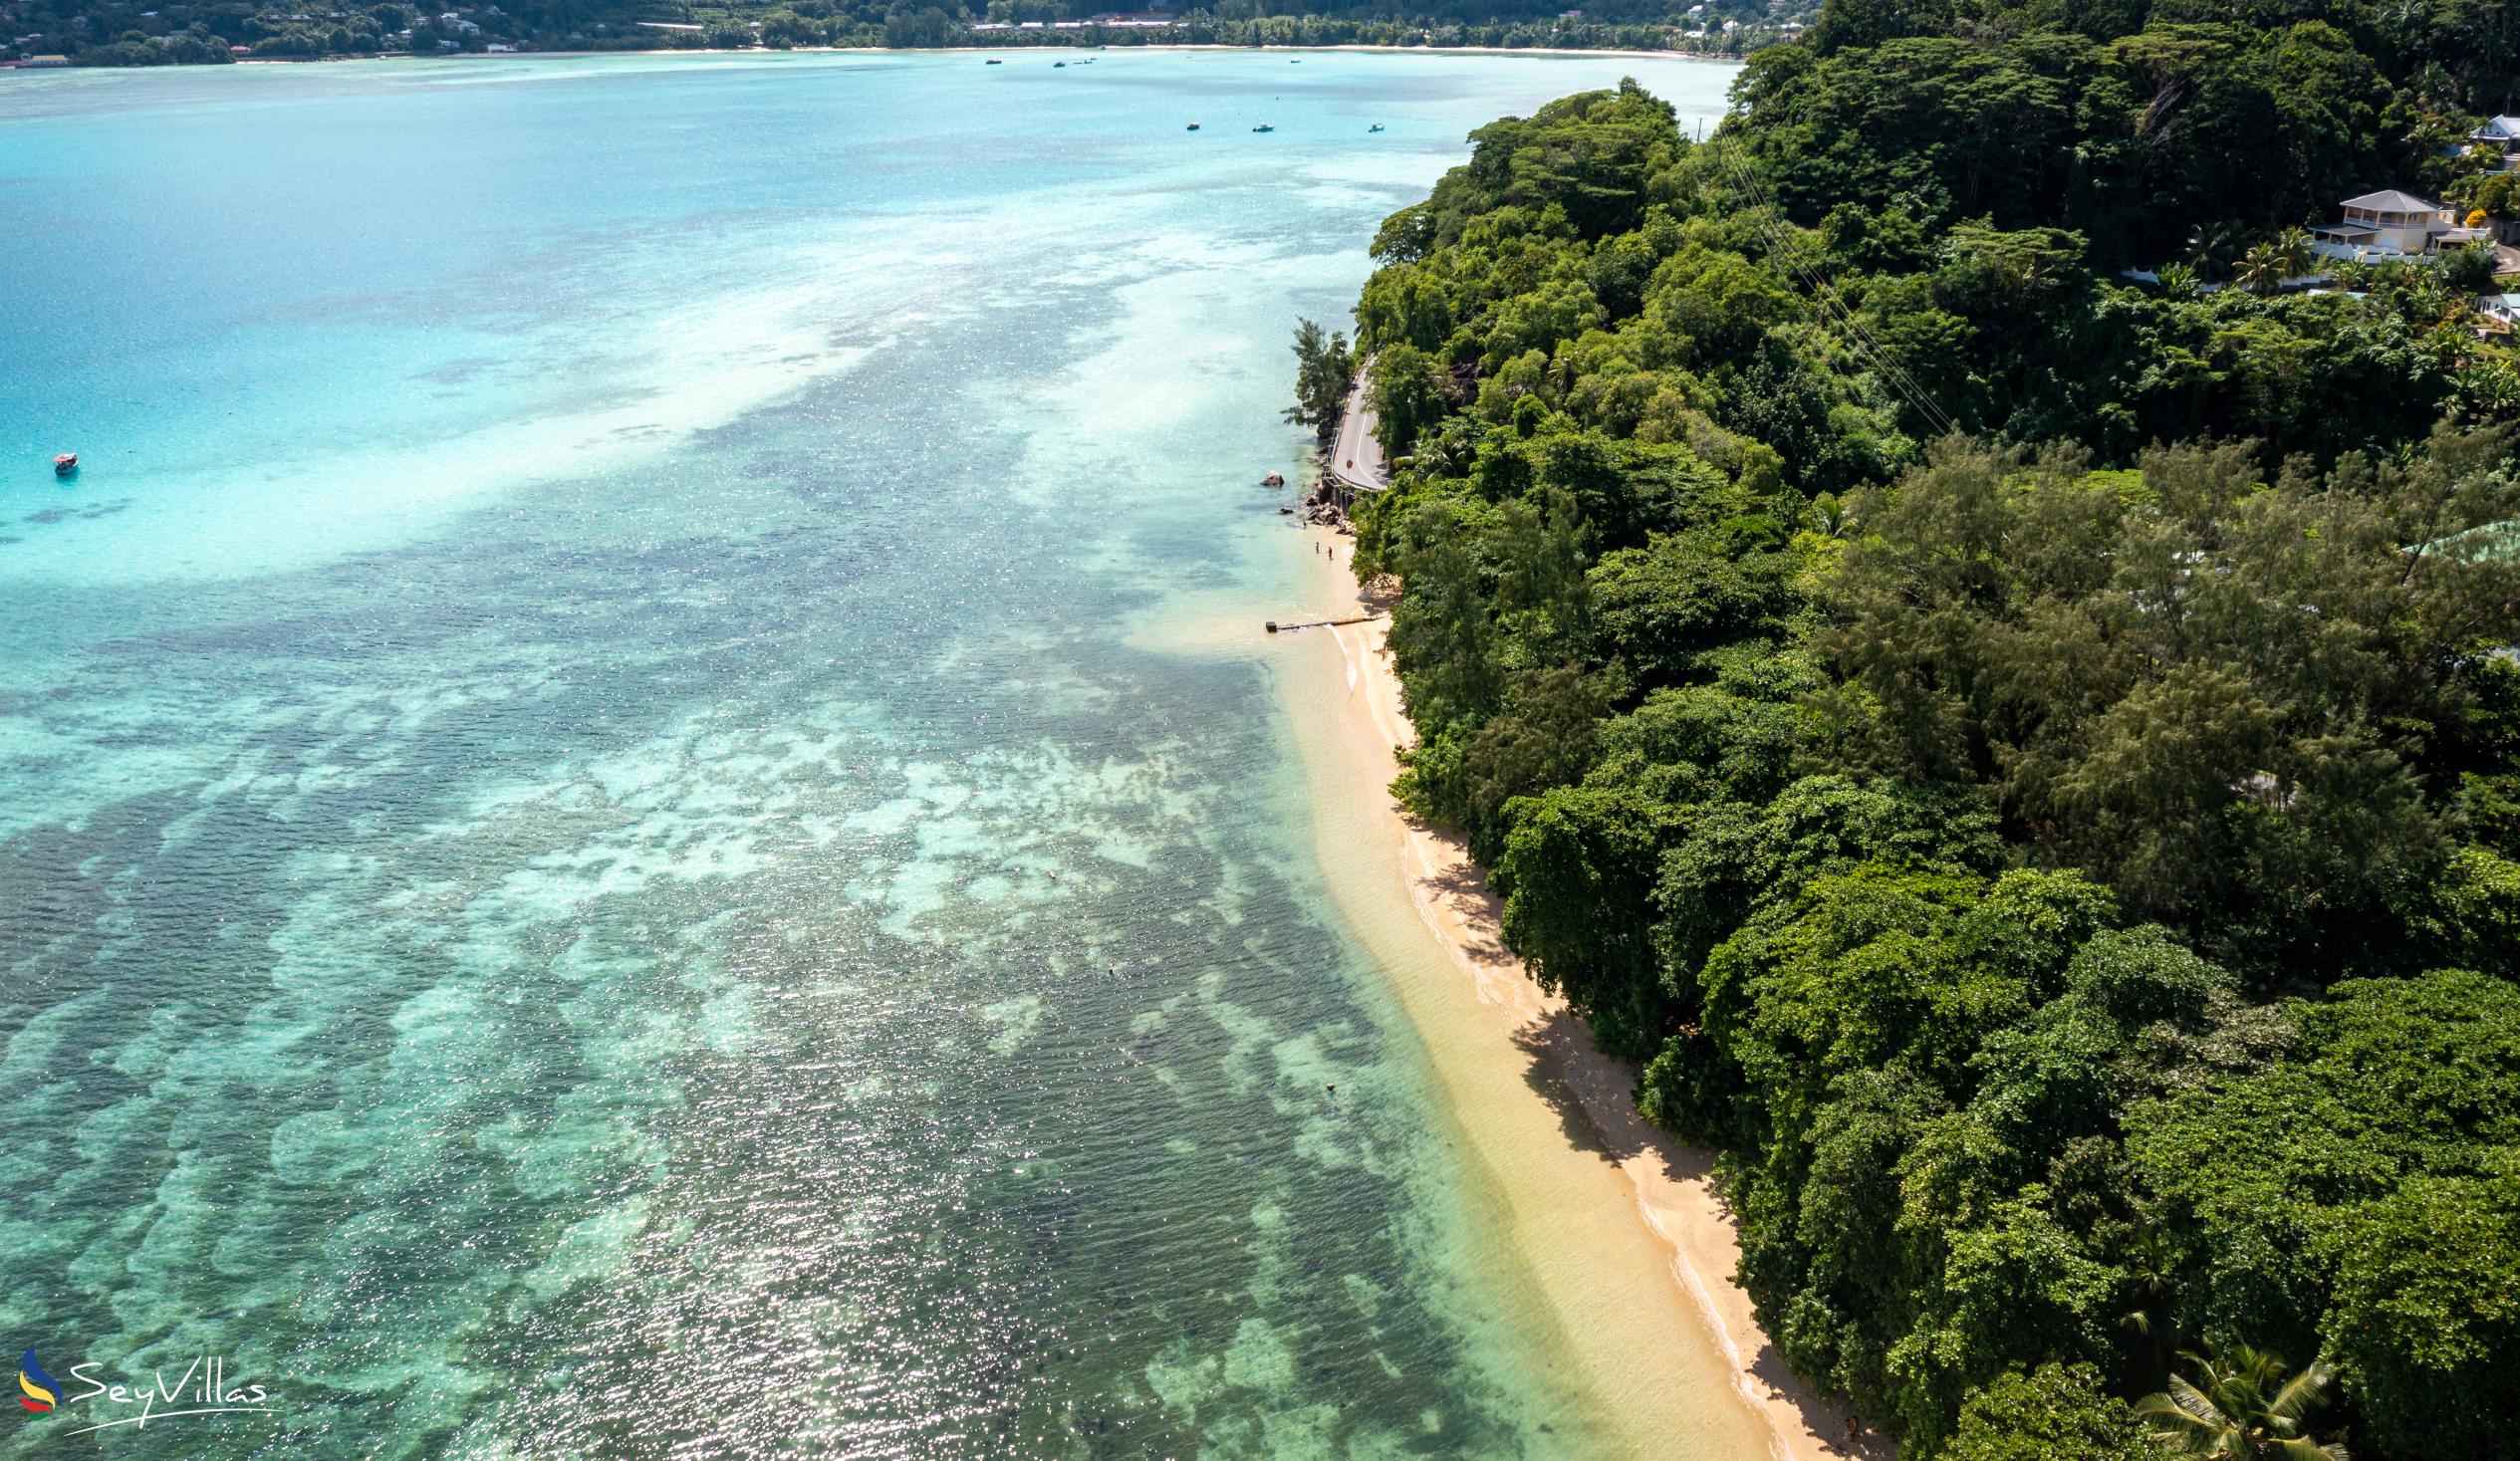 Photo 16: Paul's Residence - Location - Mahé (Seychelles)